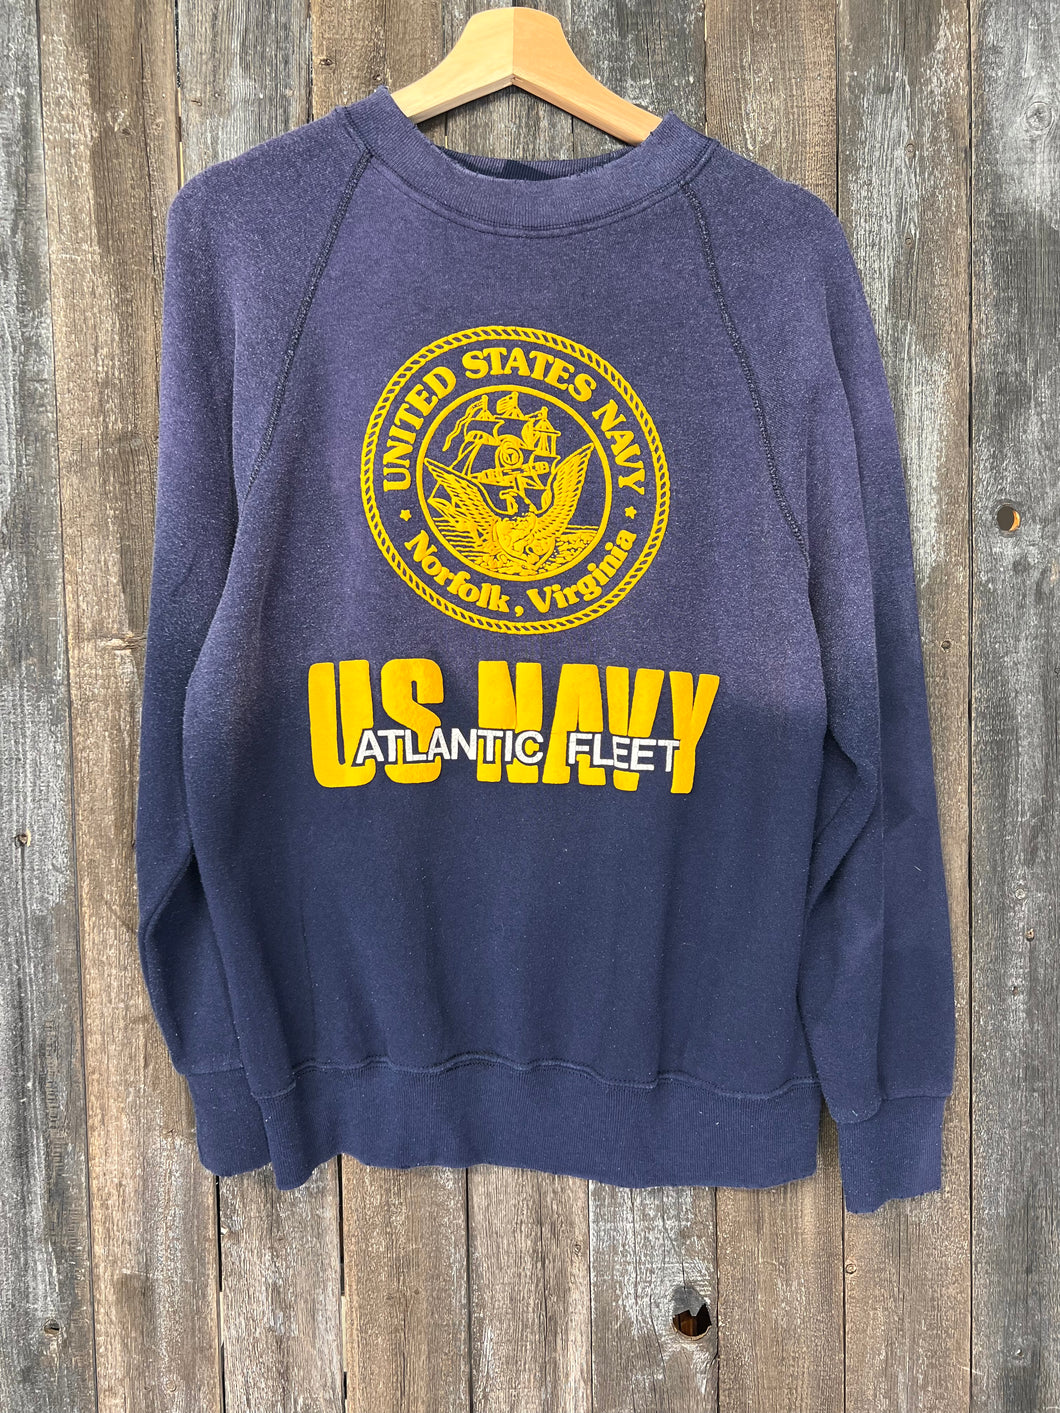 US NAVY Sweatshirt-S/M